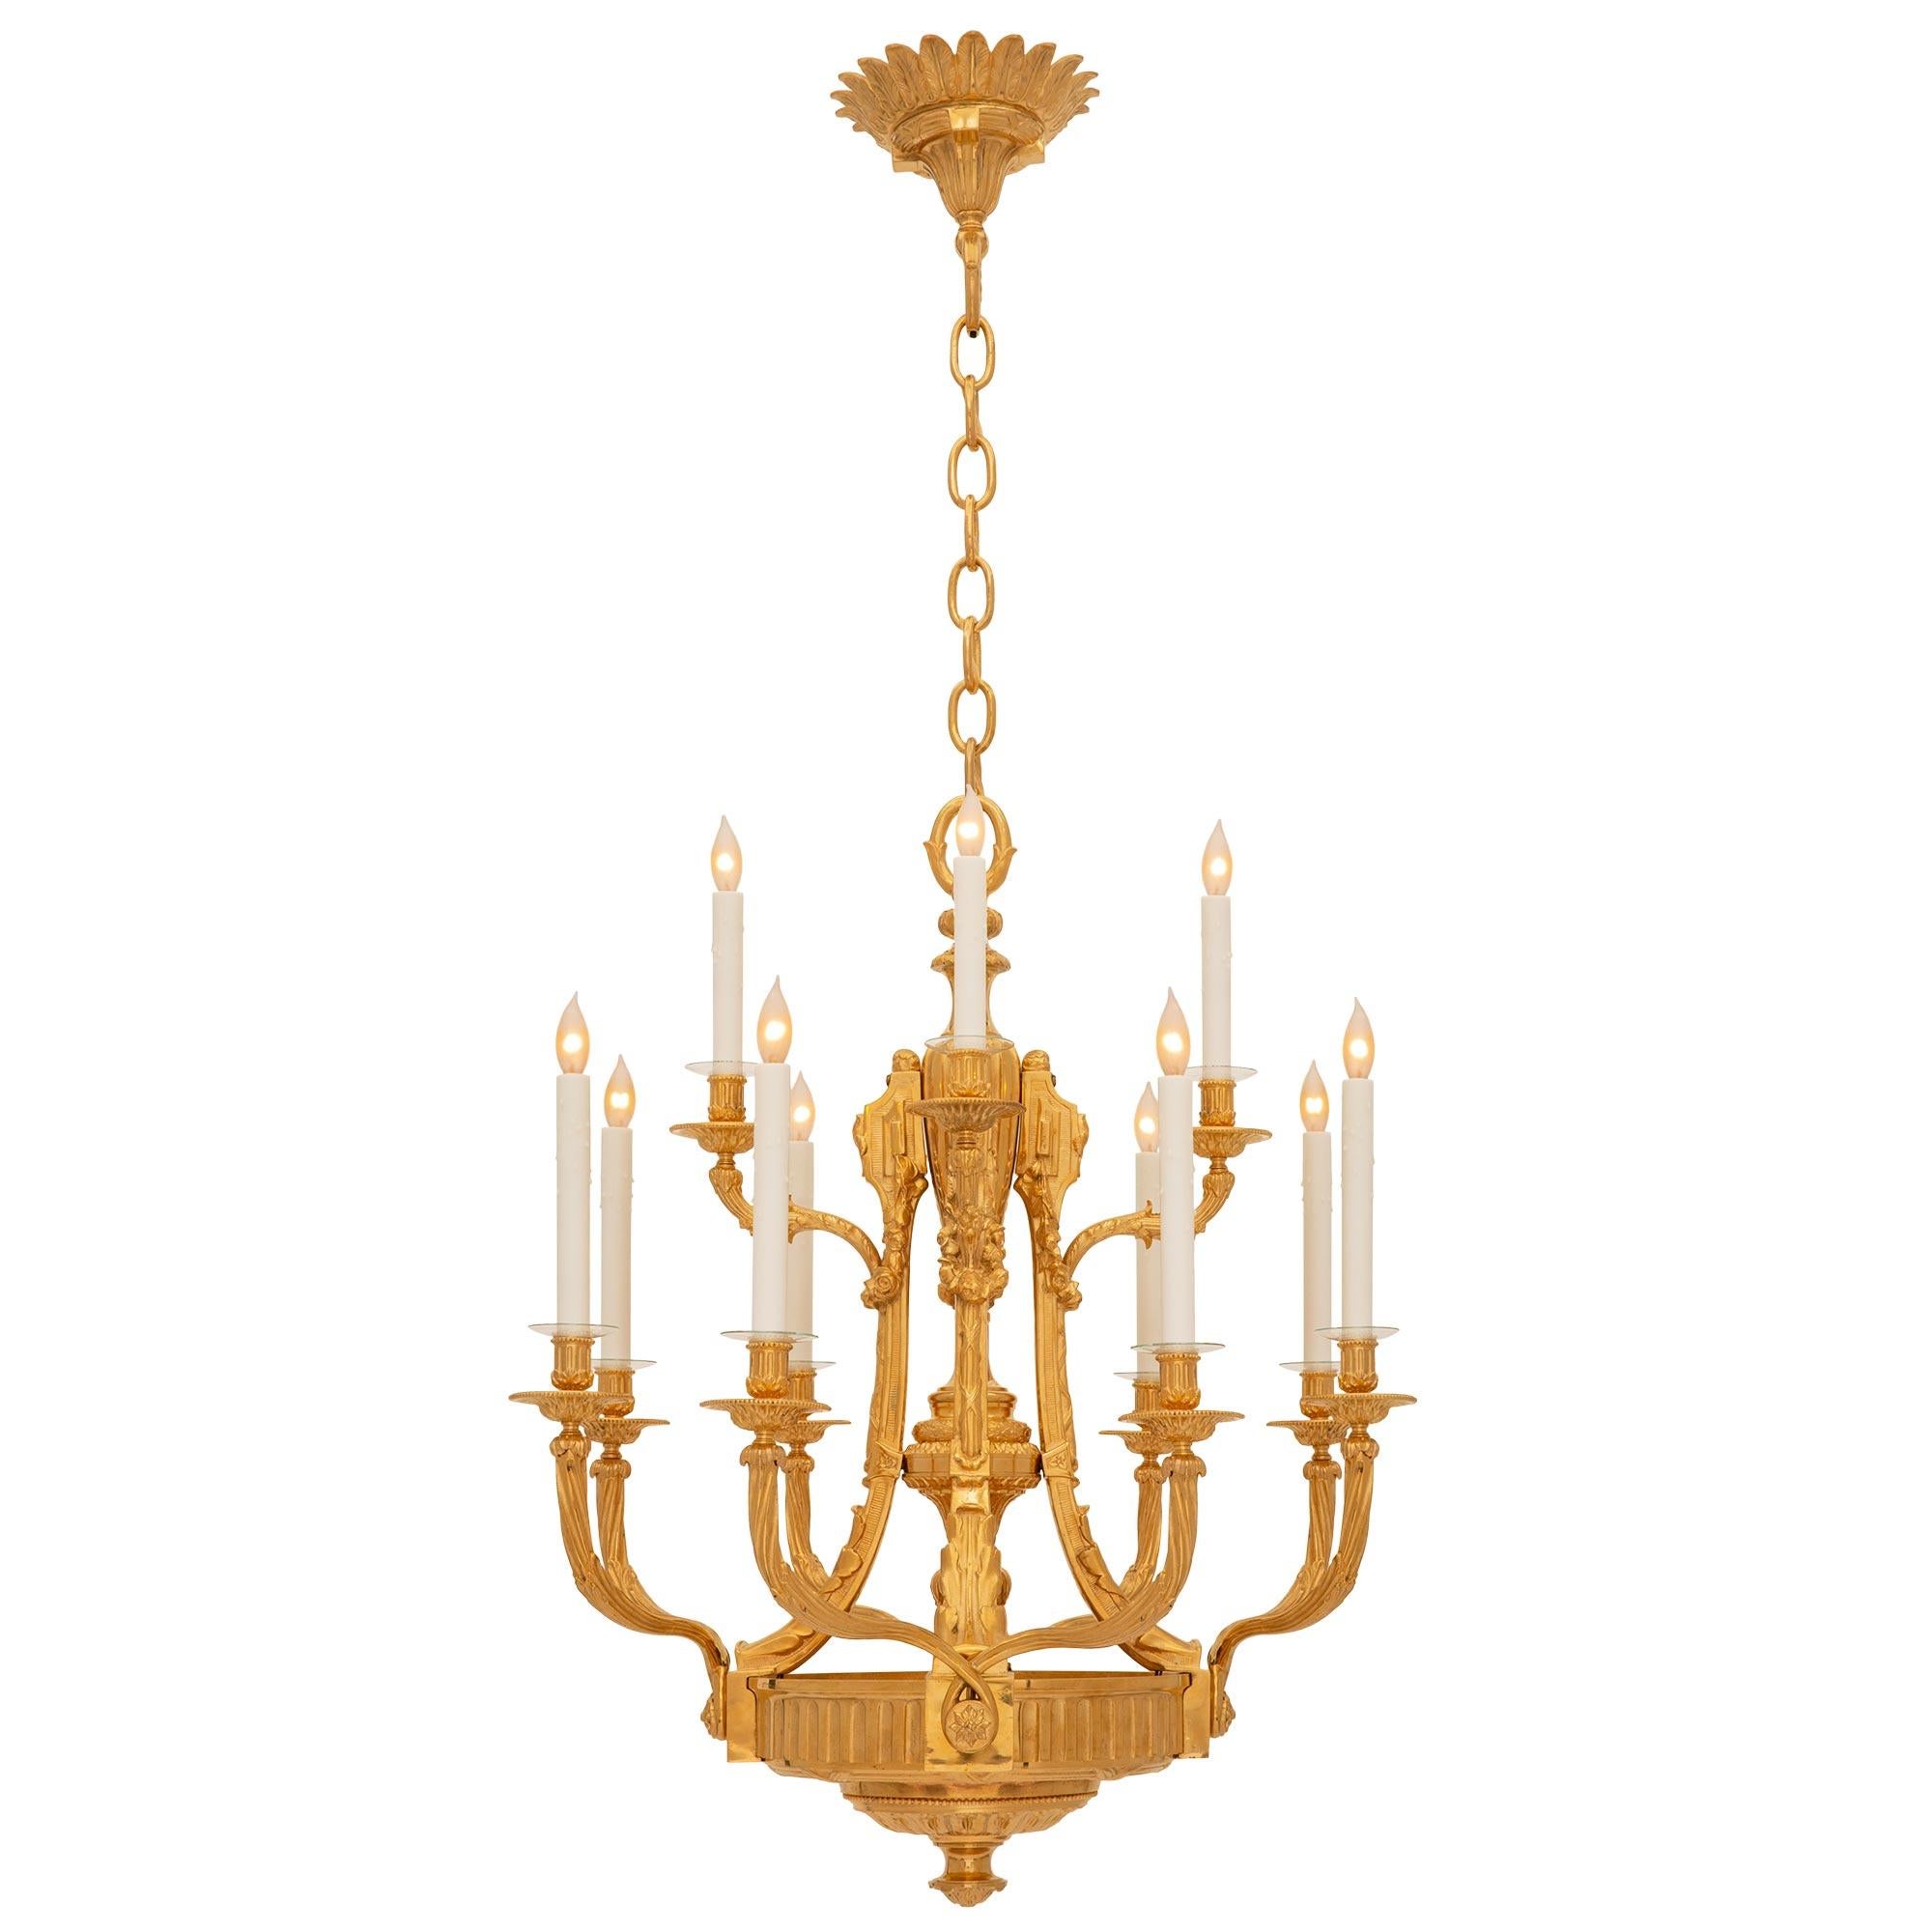 Magnifique lustre en bronze doré de style Louis XVI du XIXe siècle. Le lustre à douze bras et à deux niveaux est centré par un fin fleuron inférieur à fines feuilles tachetées, sous de belles feuilles de laurier enrubannées, sous des bandes